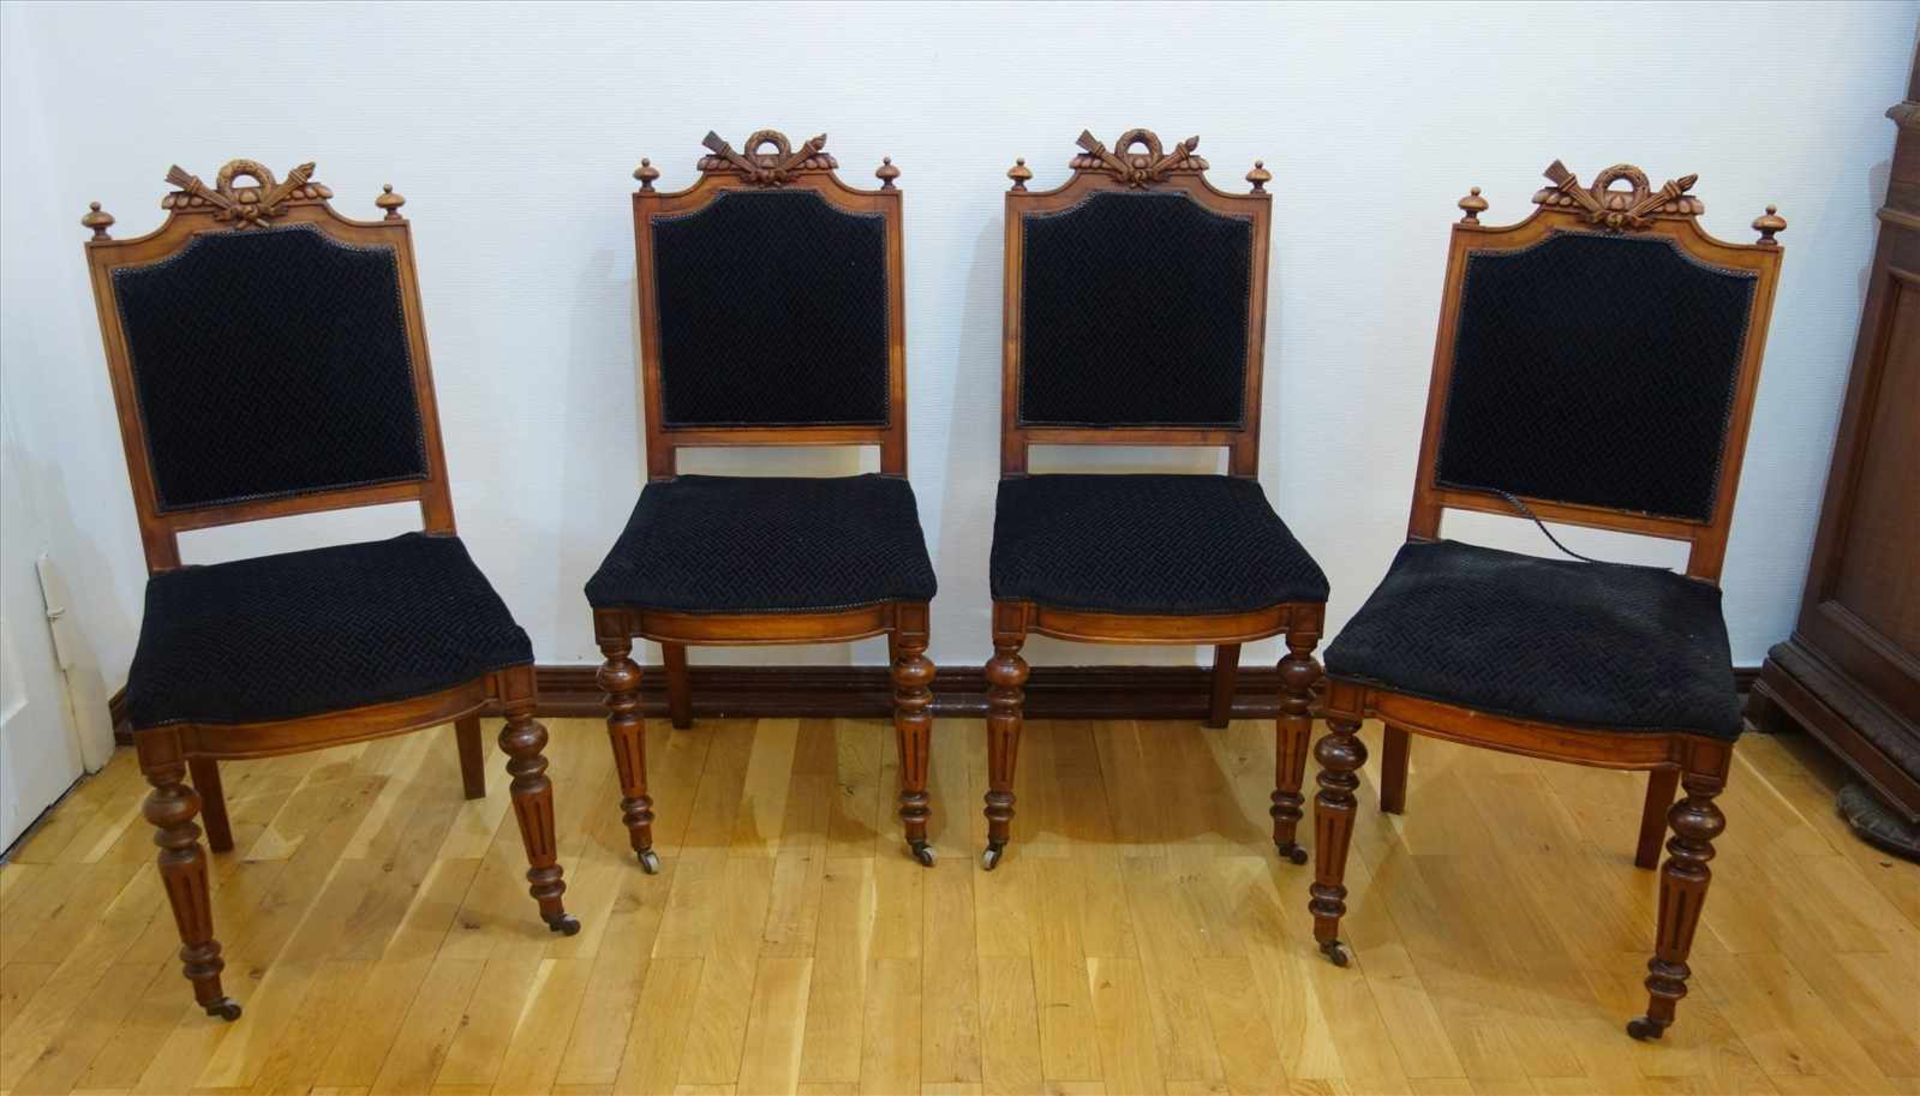 4 Stühle, Gründerzeit, um 1880, Nussbaum, Lehne und Sitzfläche gepolstert, vordere Beine mit Rollen,